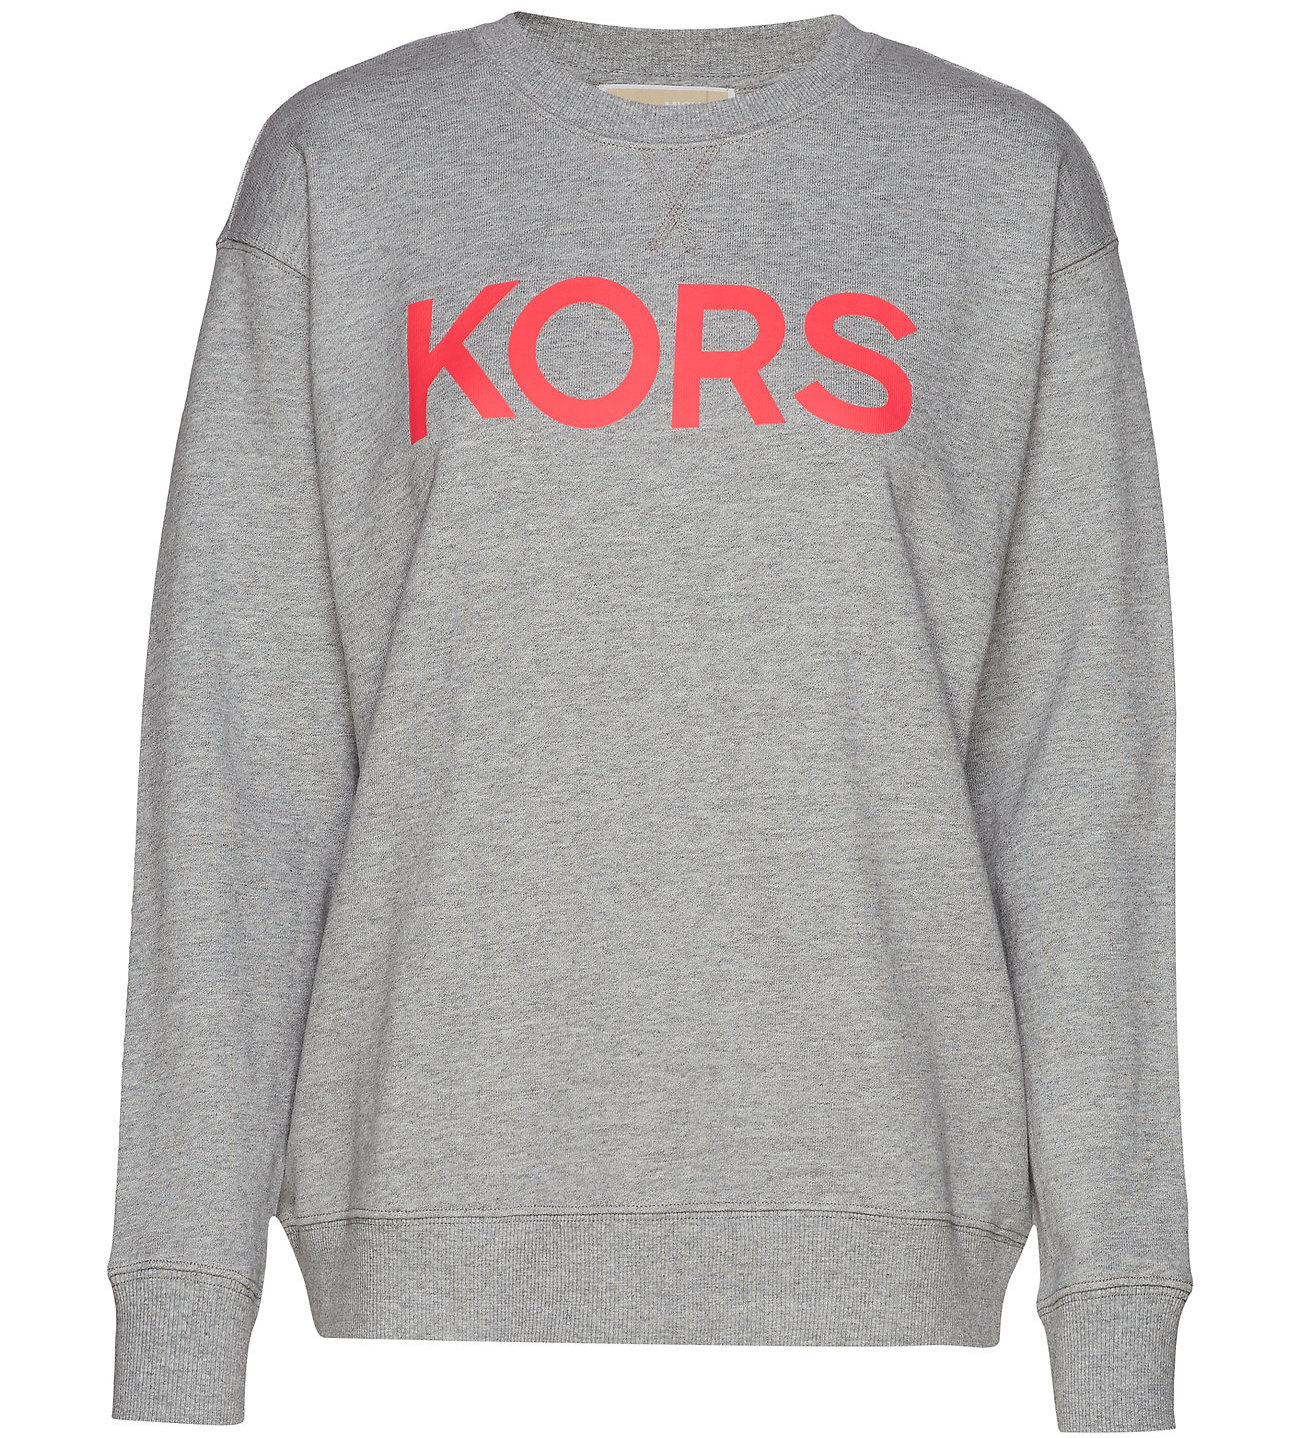 Michael Kors Dames Sweatshirt, grijs